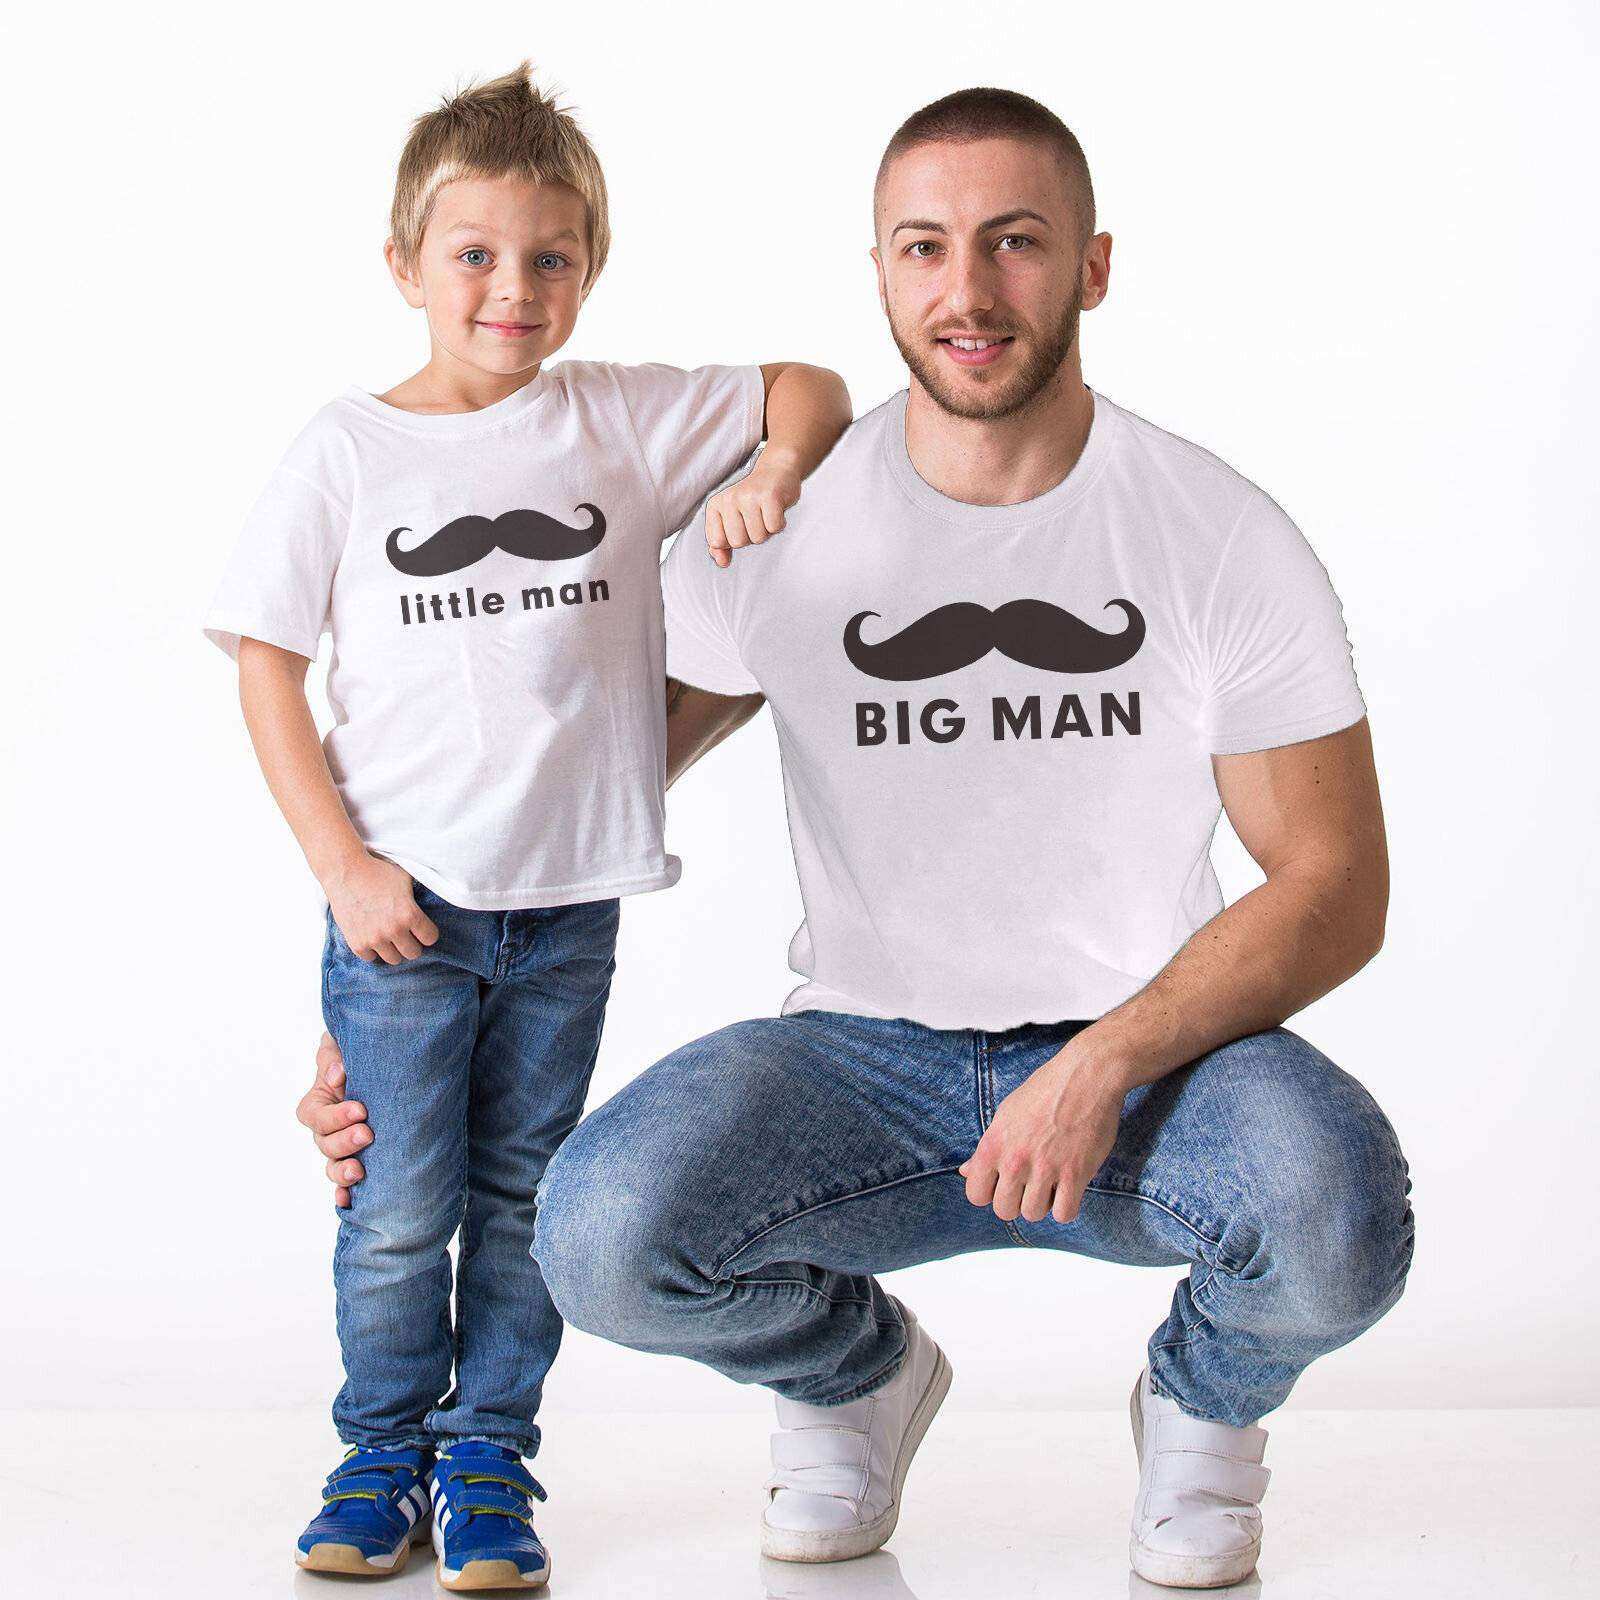 Tshirthane - Bigman,Little Man Baba Oğul Tshirt Beyaz Tişört